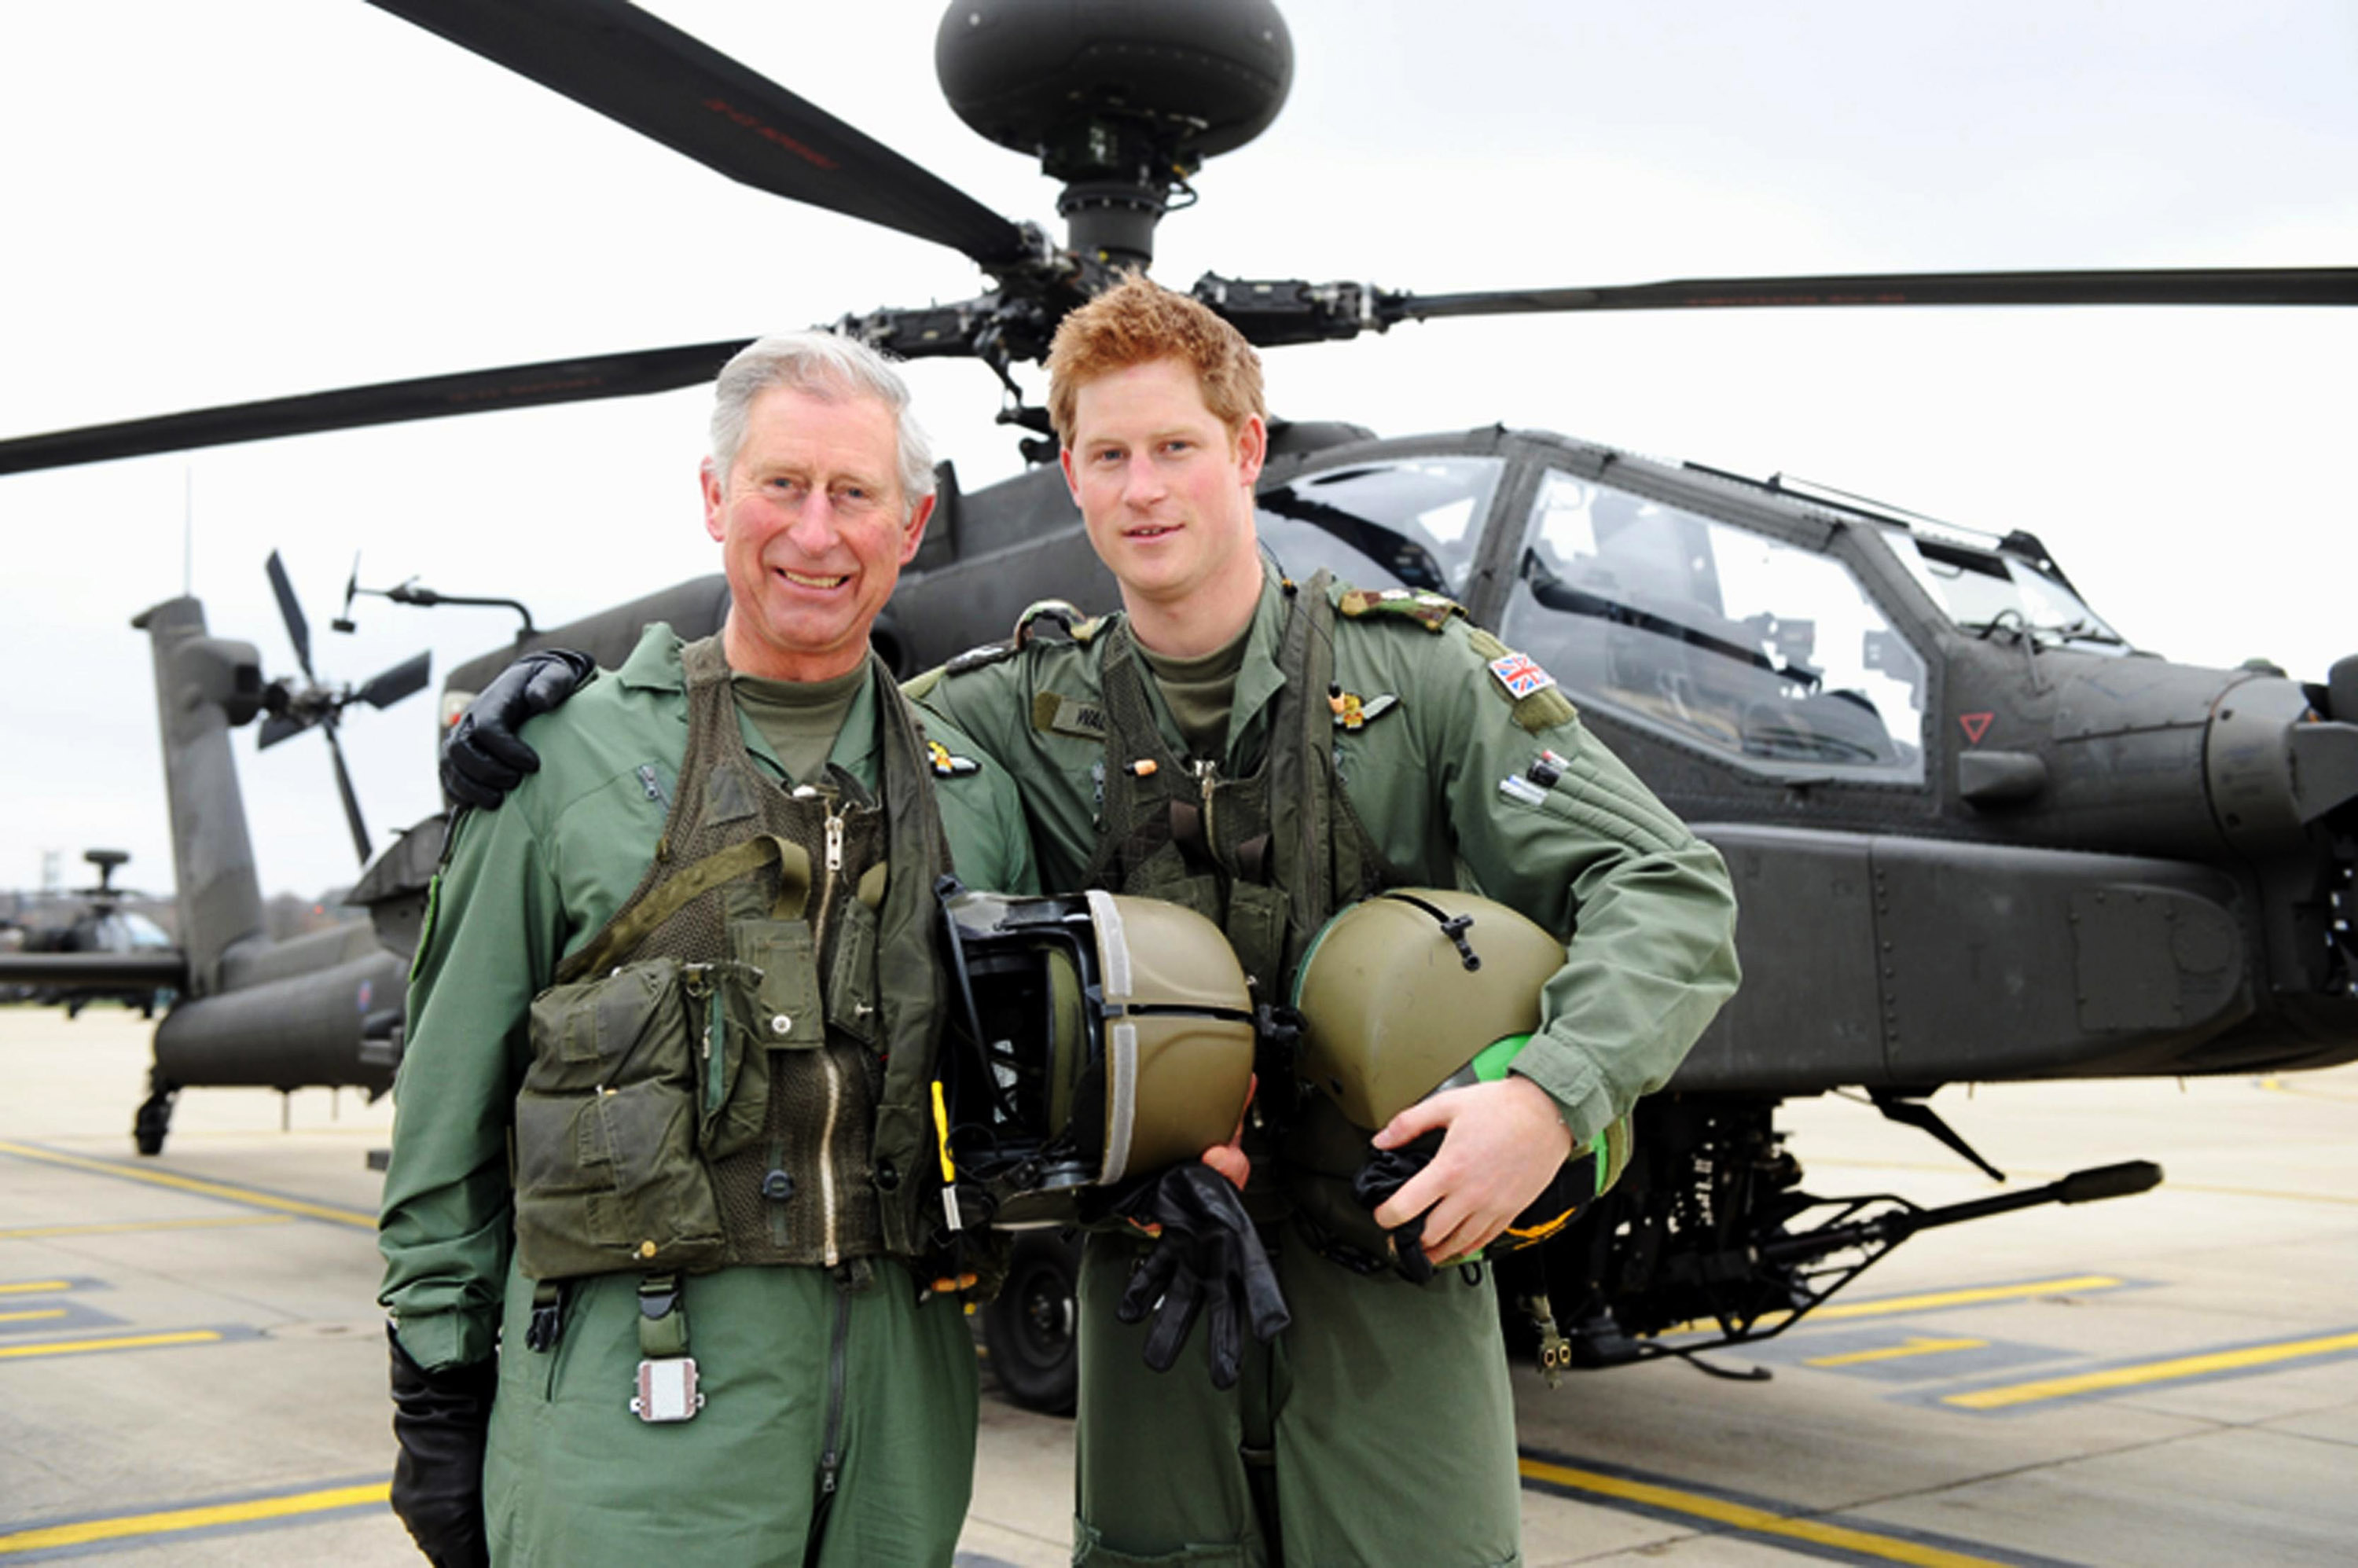 Le prince Harry et son père, le prince Charles, au centre d'aviation de l'armée, le 21 mars 2011 à Middle Wallop, en Angleterre | Source : Getty Images